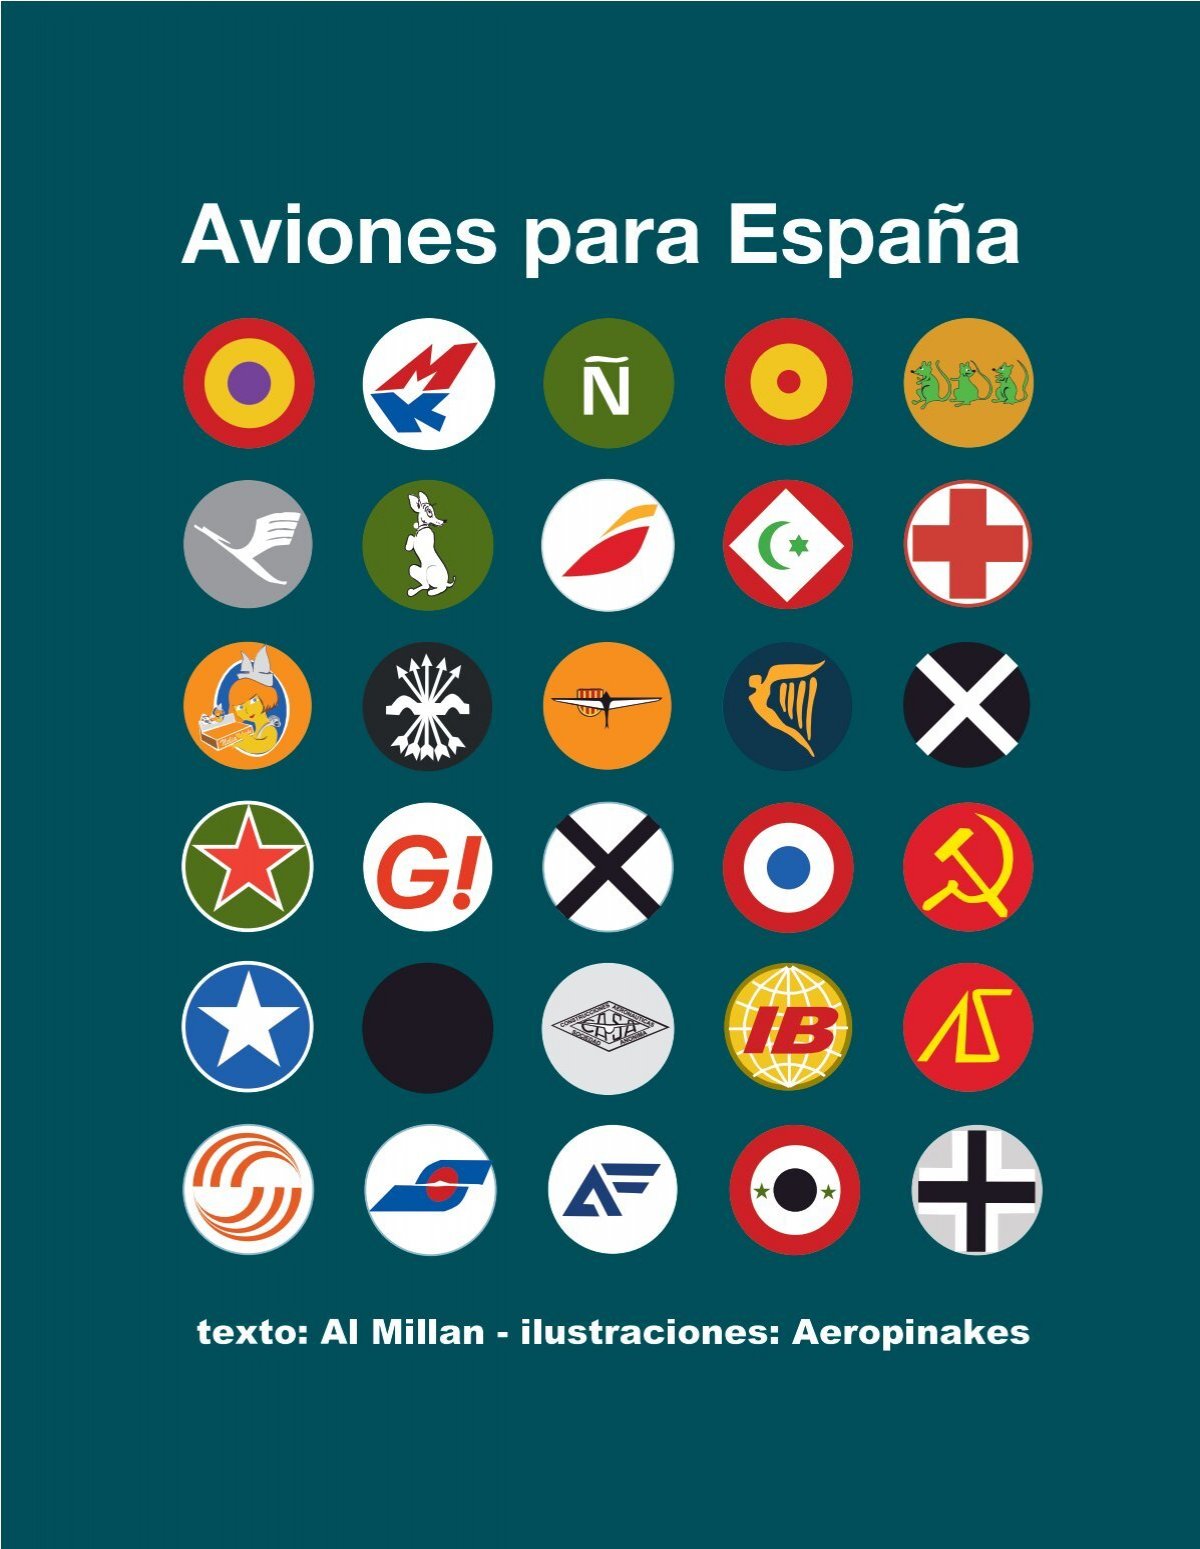 Armilla España para mujer | Bandera de ES, Ciudad - Ropa Bandera - Camiseta  con cuello en V, Negro, S